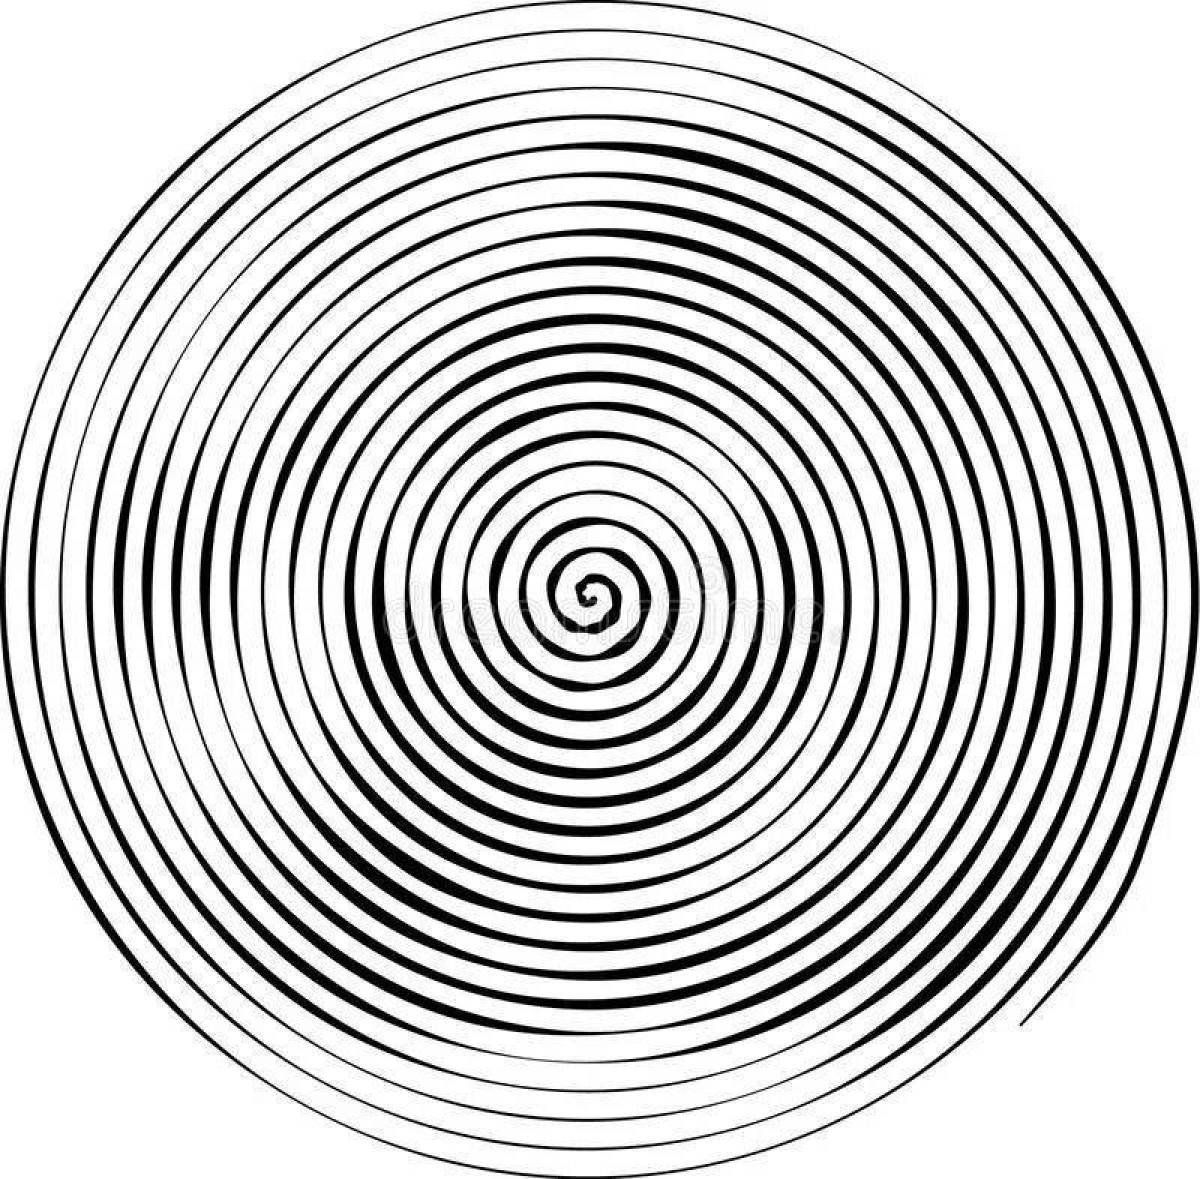 Exquisite spiral portrait